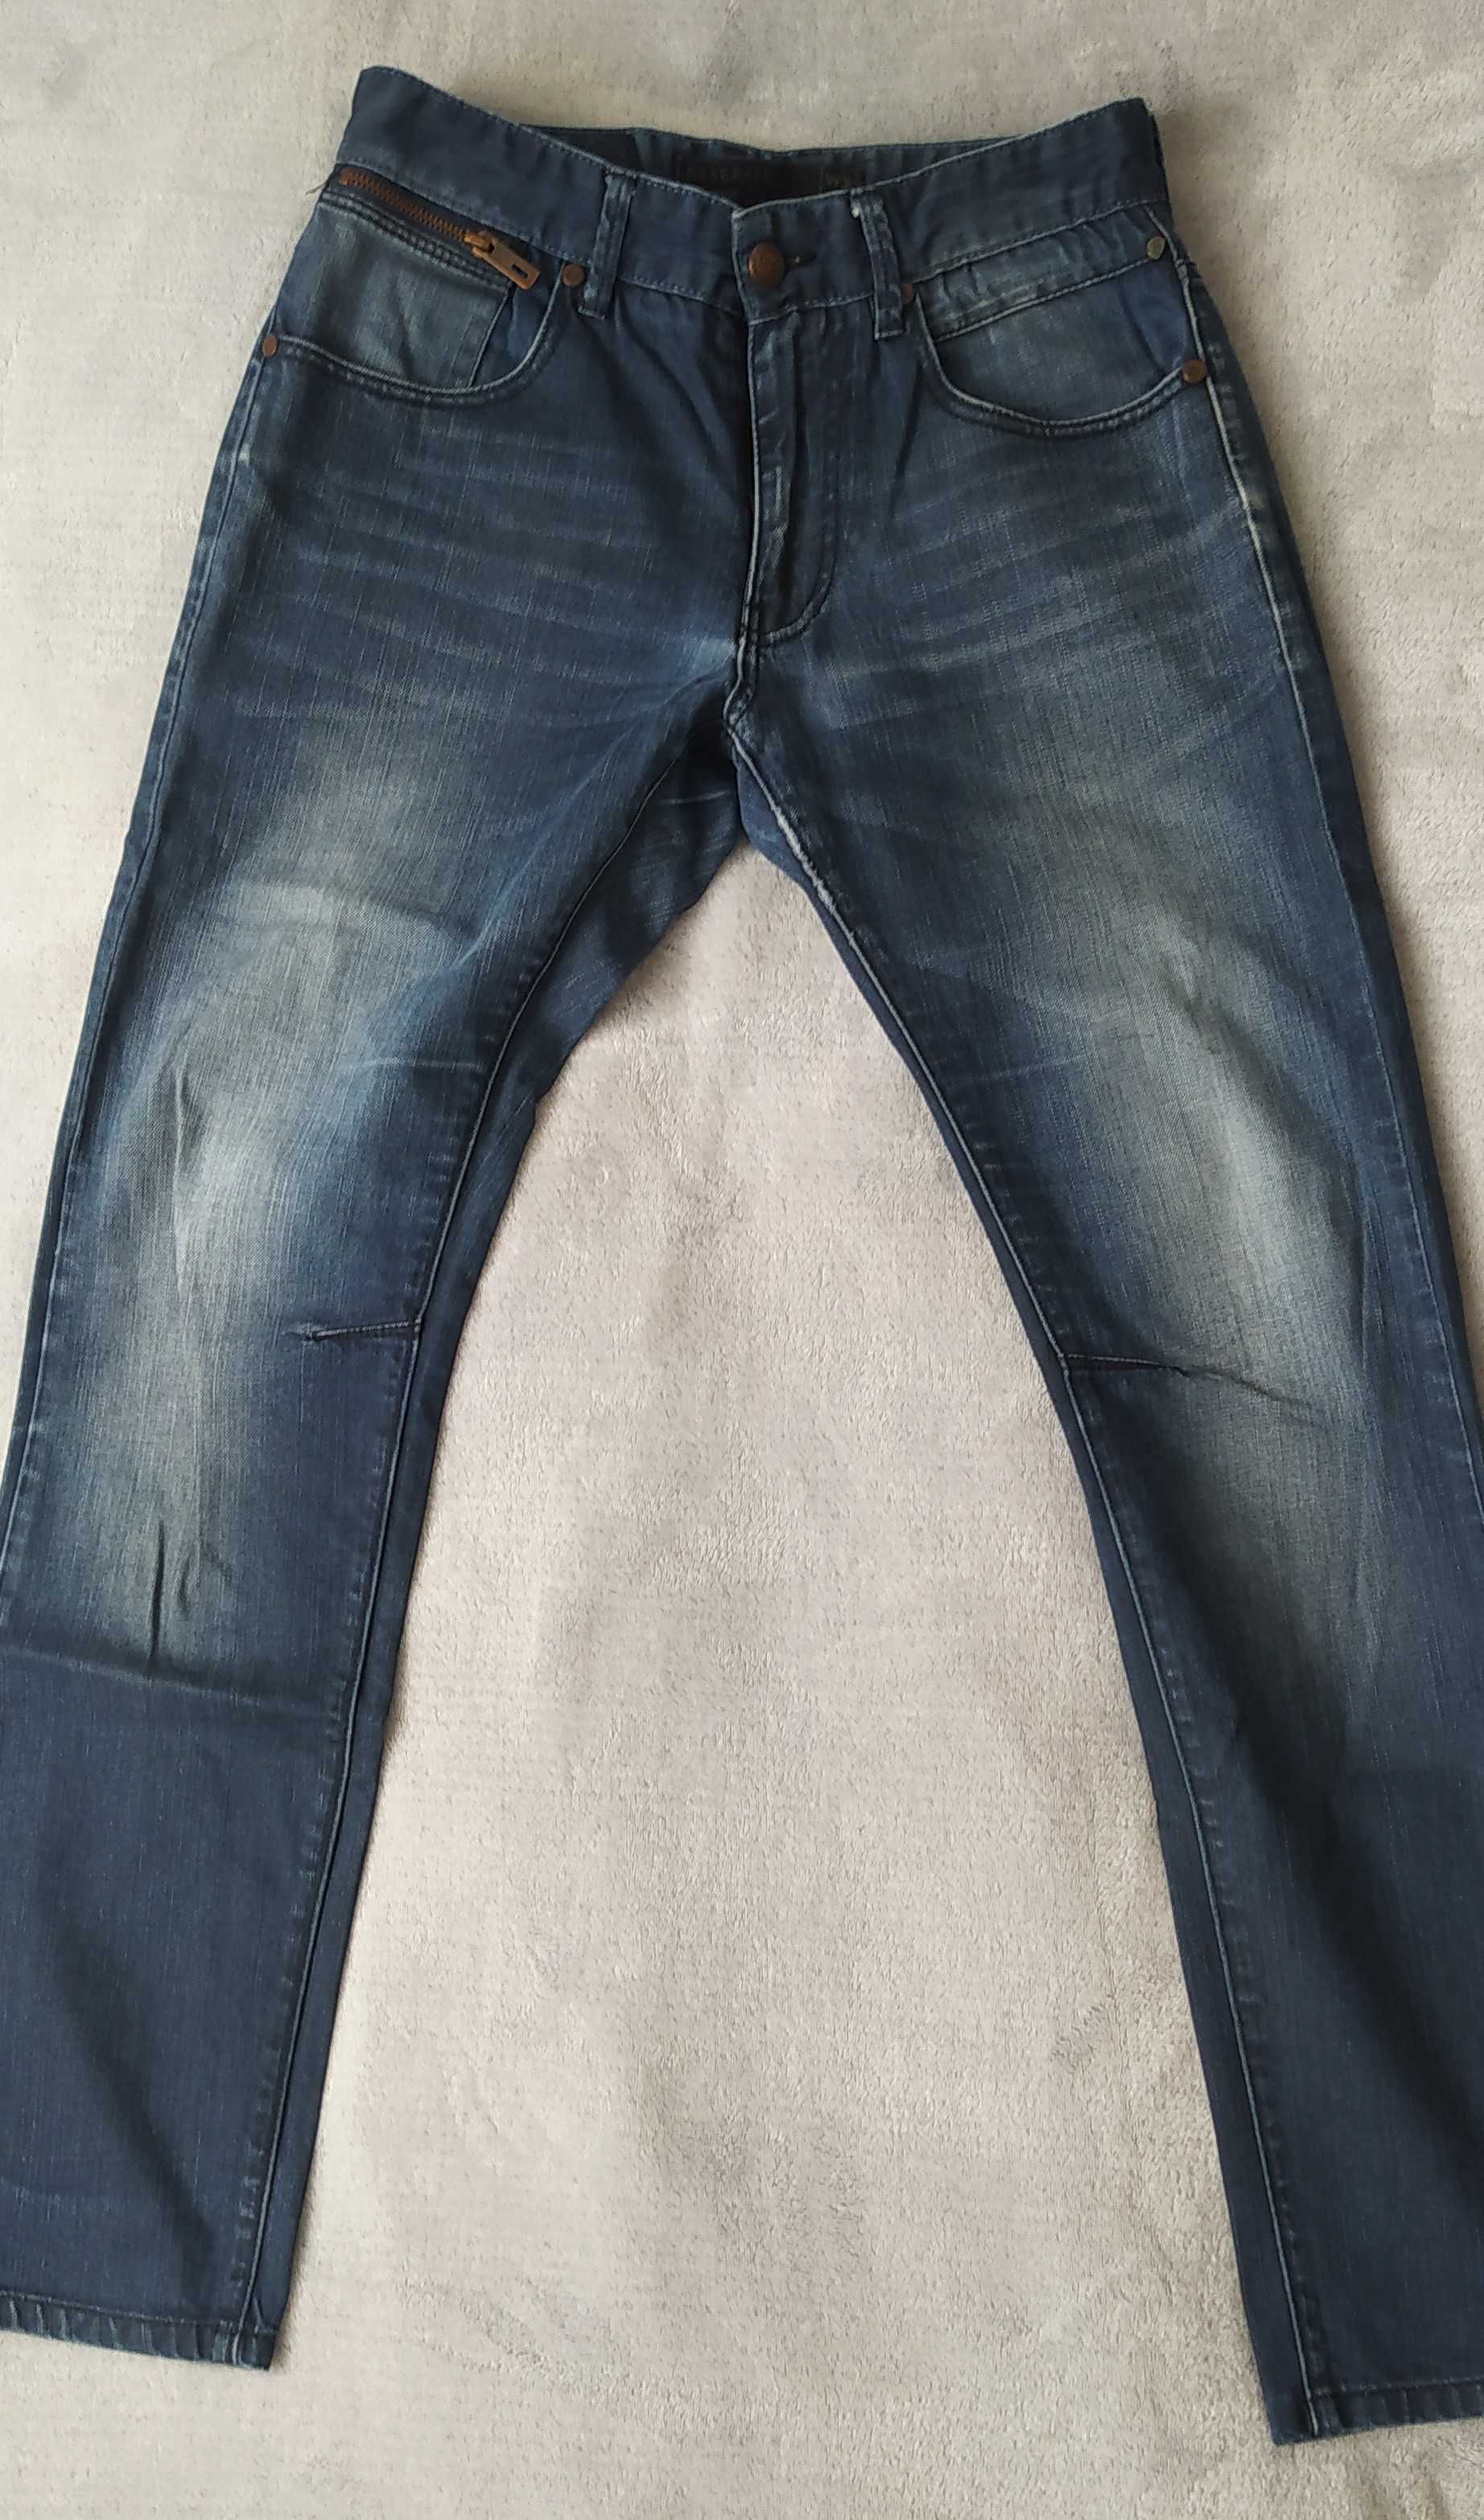 Spodnie męskie jeans W30 L32